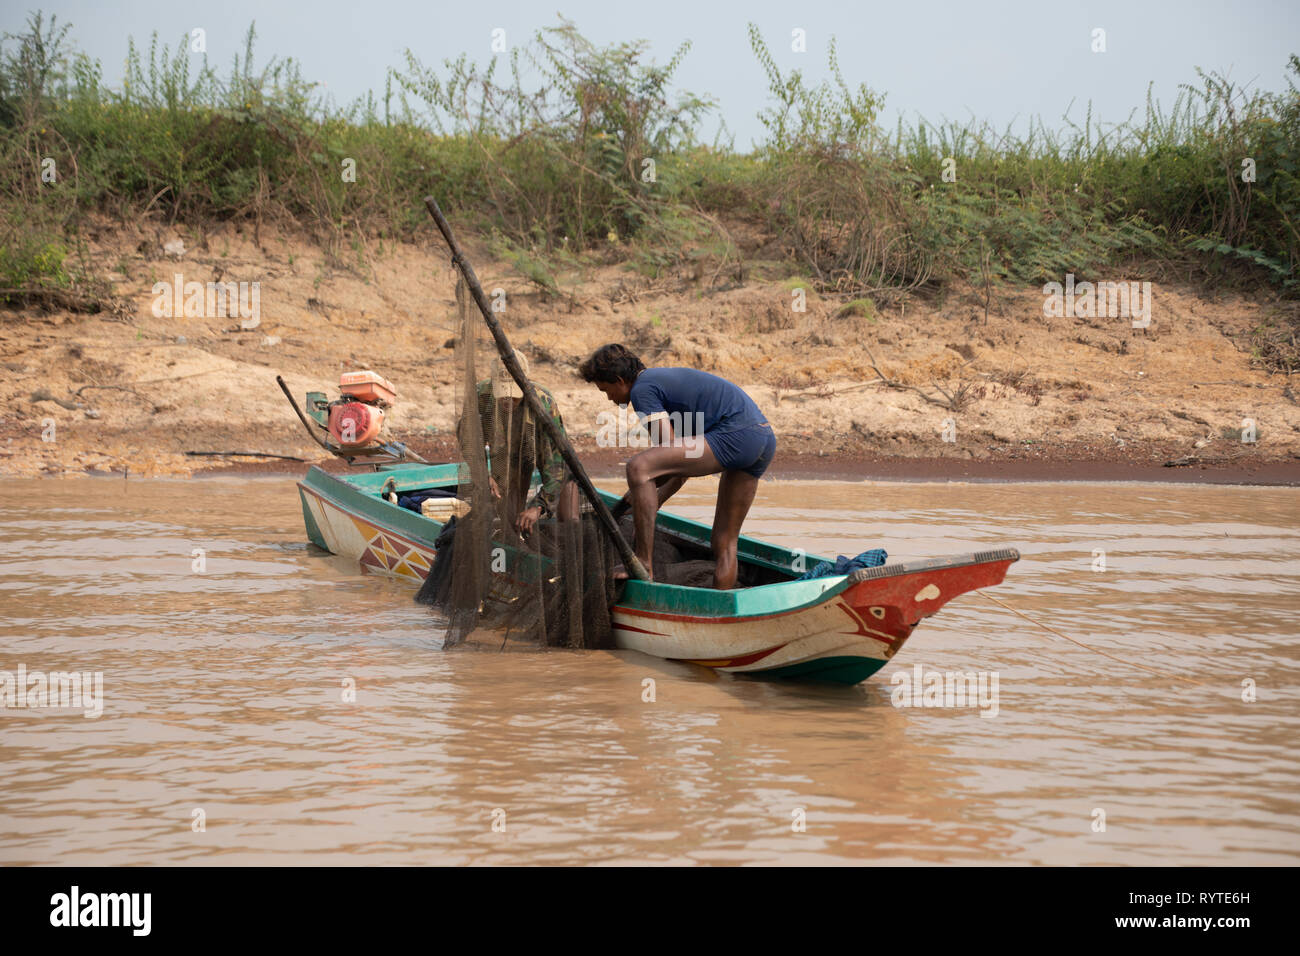 Kampong Phluk, Siem Reap, Cambodge, vendredi 15 mars 2019. Météo Cambodge : la période de temps sec chaud continue avec un maximum de 36 degrés et les bas de 26 degrés. Les pêcheurs cambodgiens à l'aide de filets près de Tonie sap tôt le matin pour éviter la chaleur extrême plus tard dans la journée. La pêche est une industrie importante et les méthodes traditionnelles sont toujours utilisés dans la région de KOMPONG PHLUK. Credit : WansfordPhoto/Alamy Live News Banque D'Images